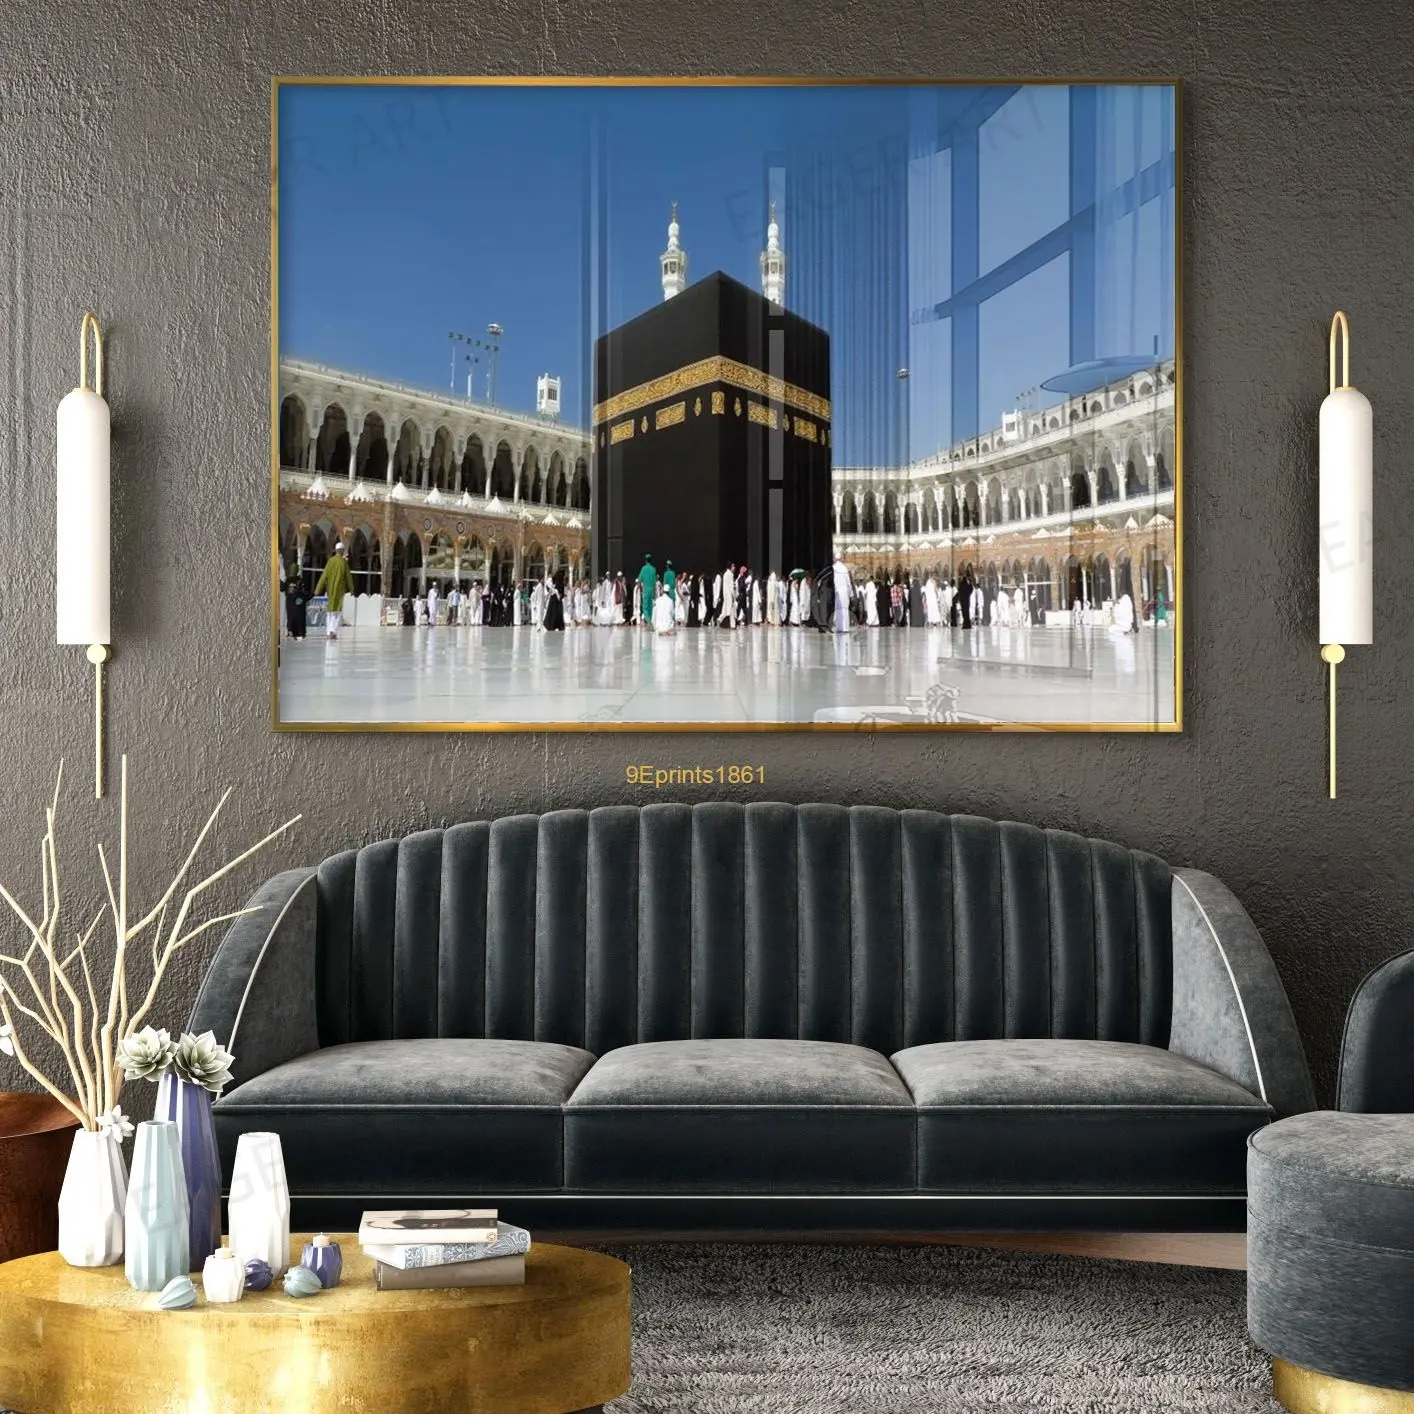 ภาพอะคริลิคมุสลิมอาหรับพิมพ์ลายอะคริลิคสำหรับตกแต่งบ้านงานศิลปะติดผนังกระจกอิสลามสุดหรู